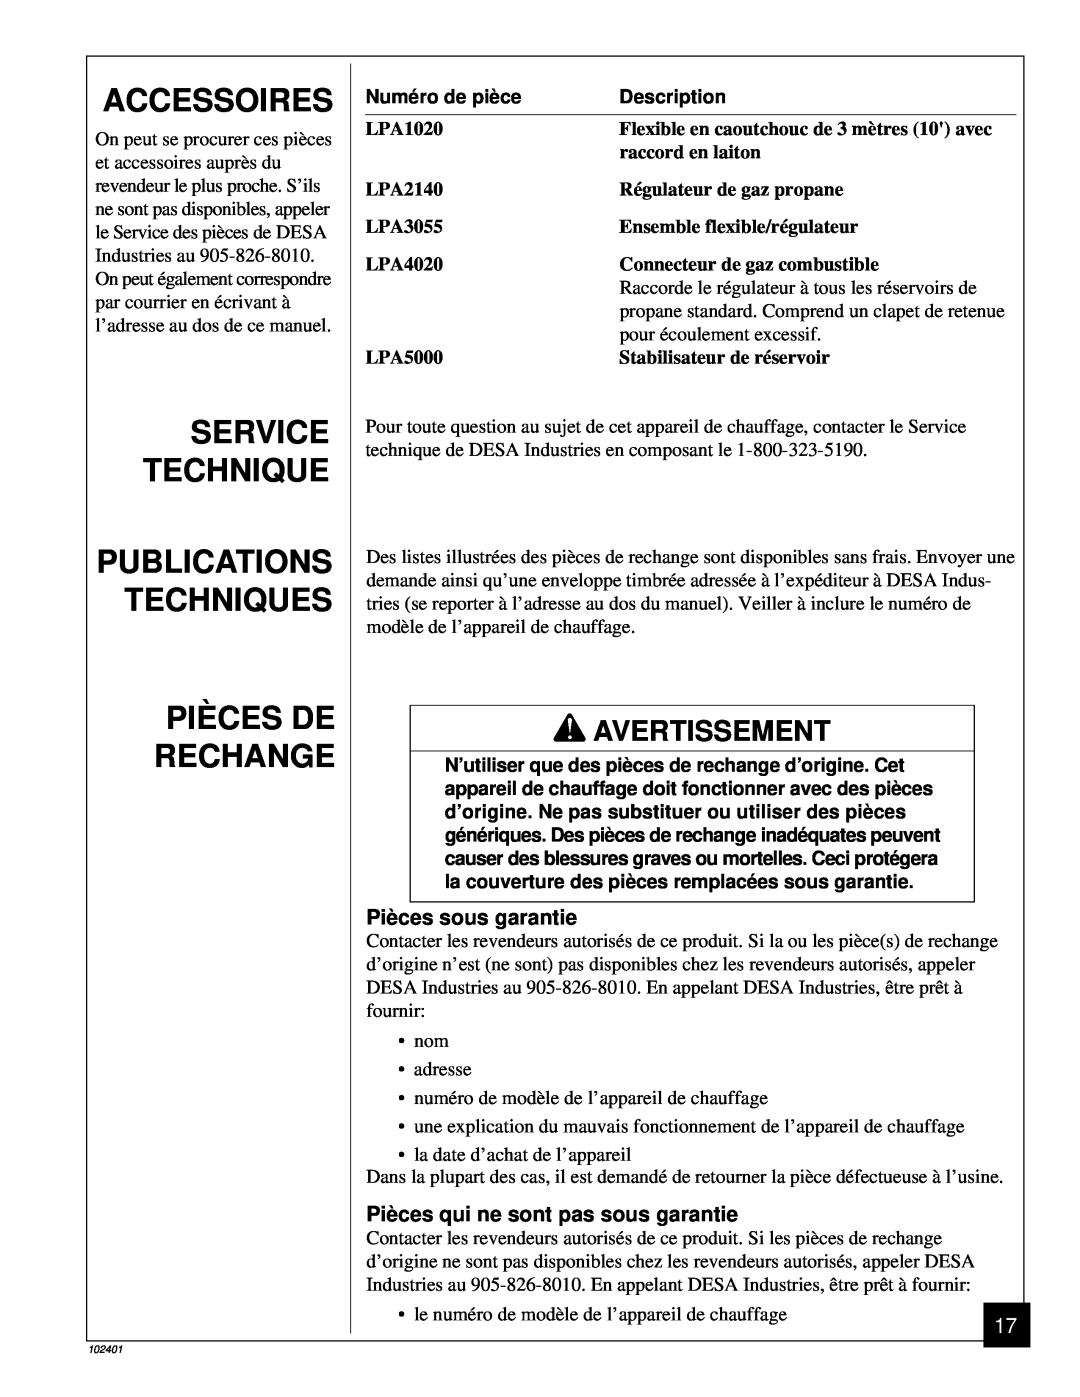 Desa RCLP50A Accessoires, Service Technique Publications Techniques, Piè Ces De Rechange, Piè ces sous garantie 